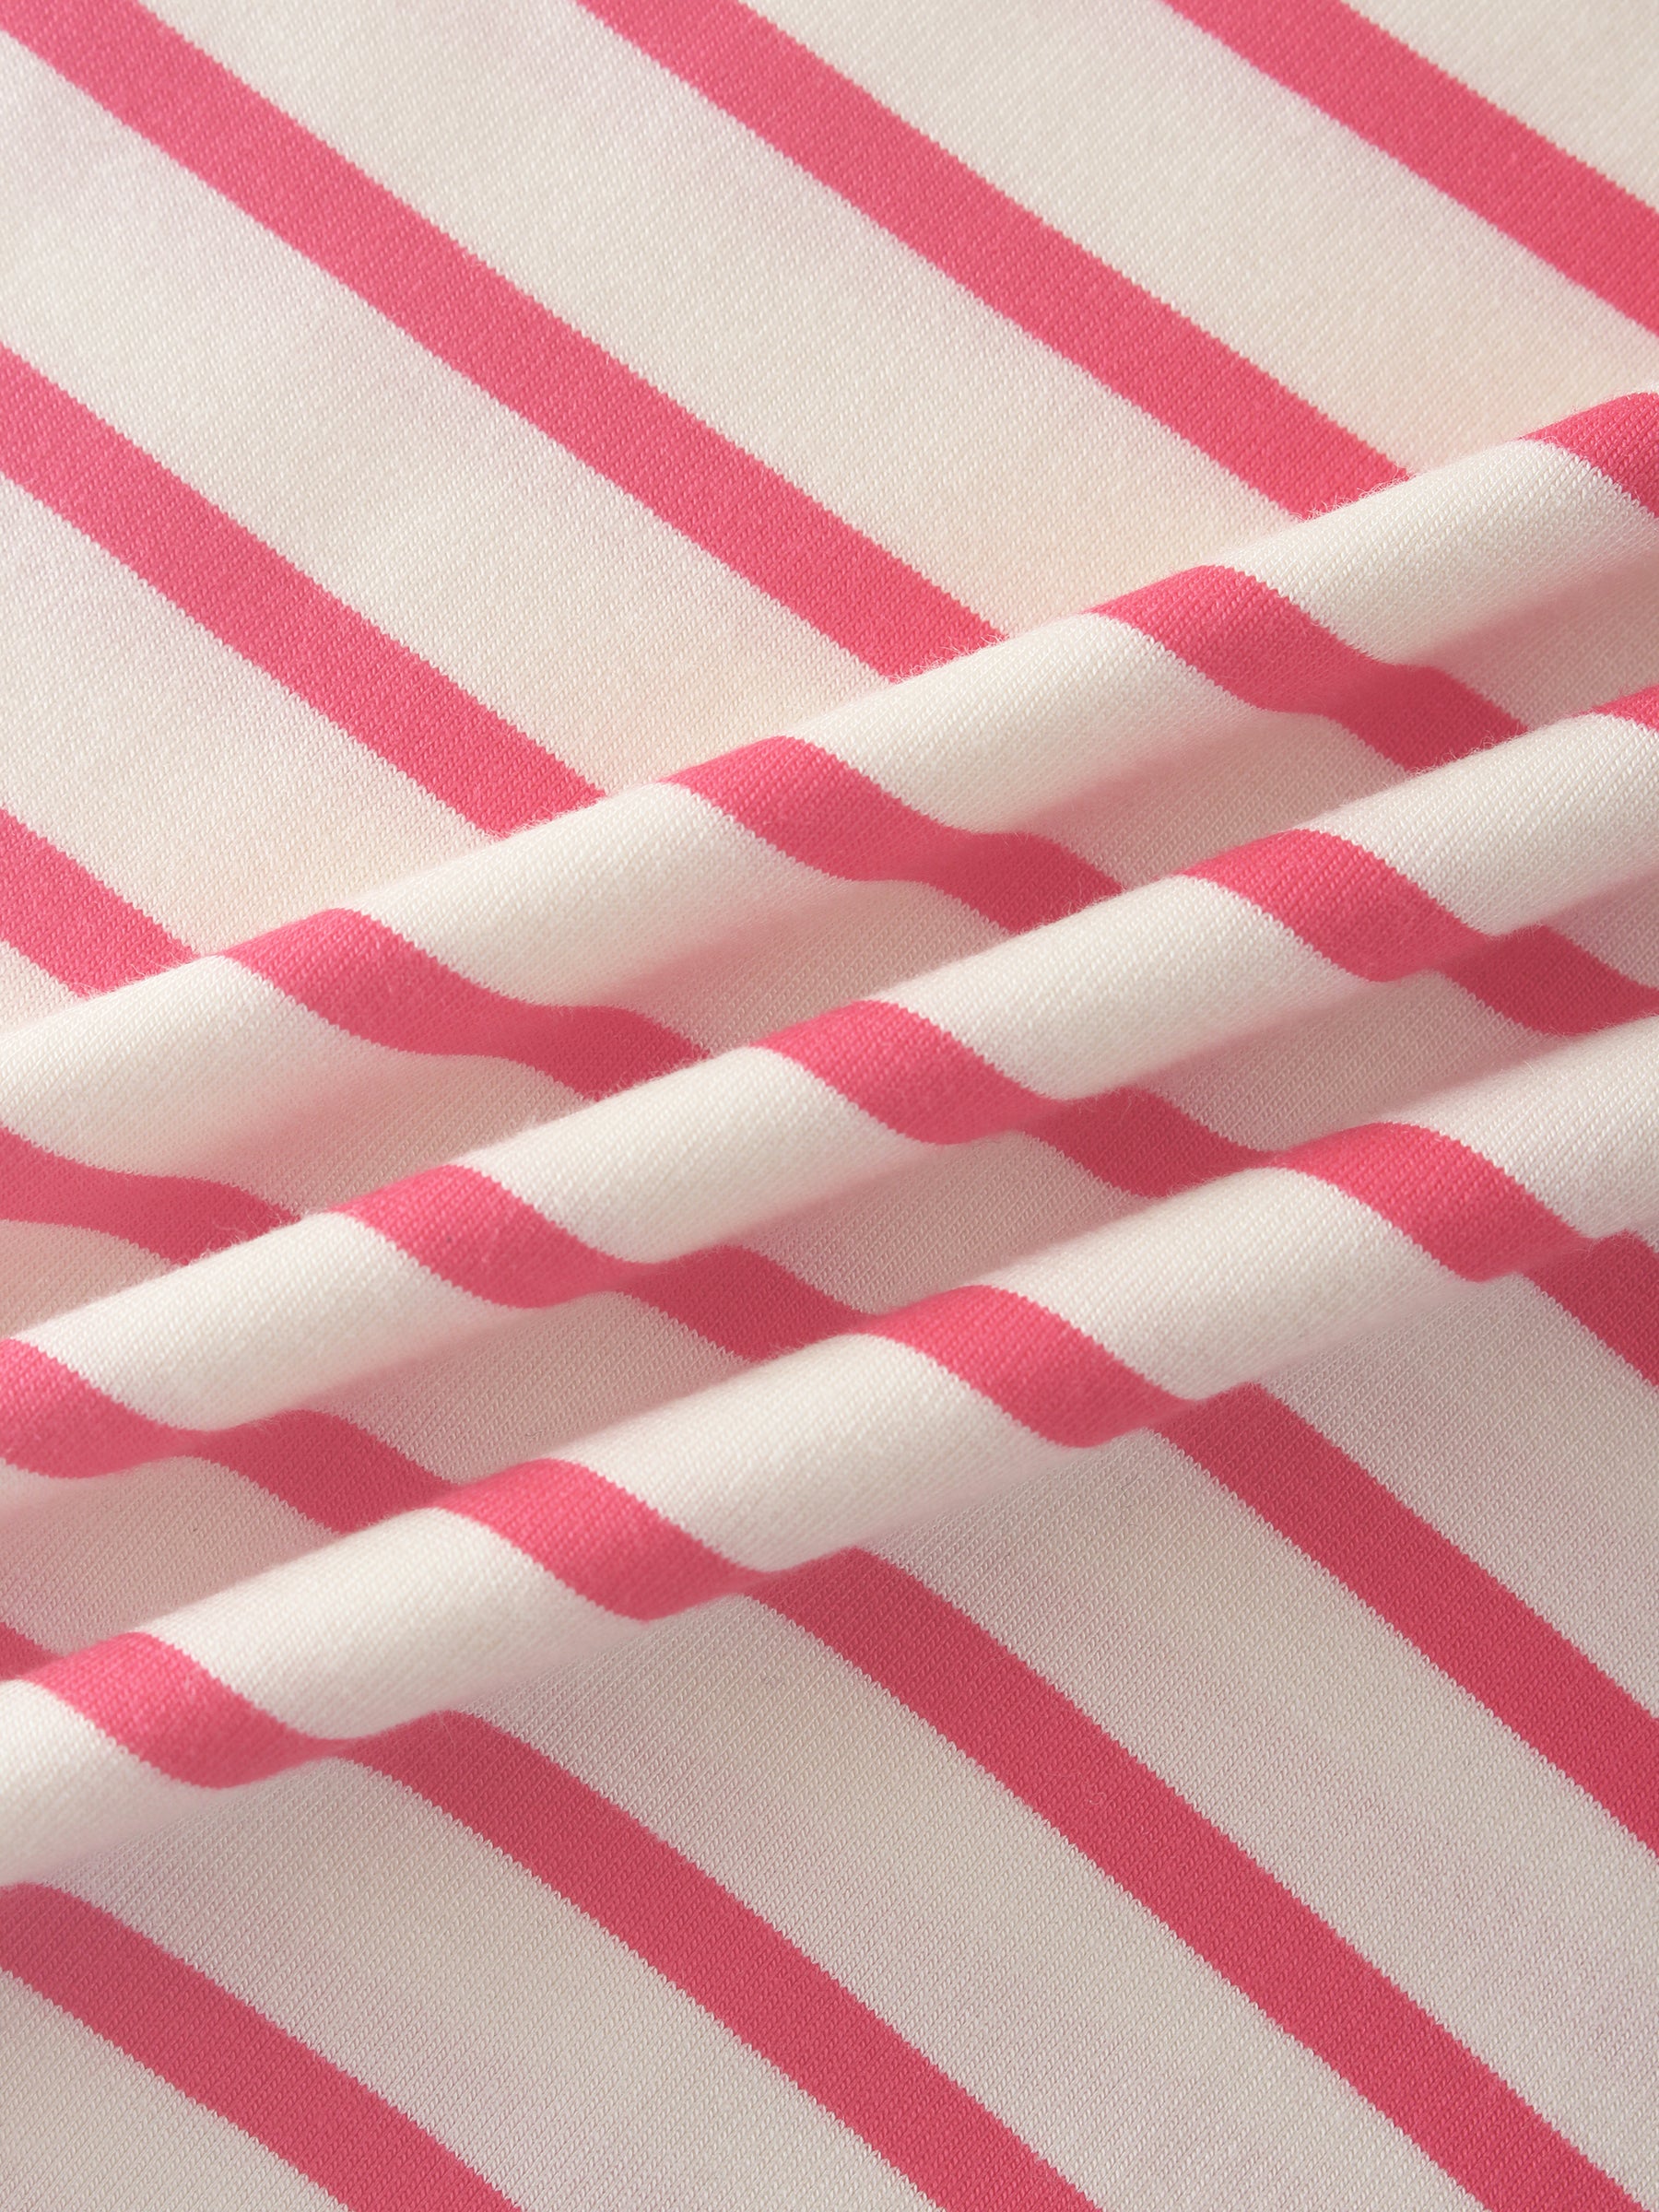 Butter Soft Stripe Crew-Rosa intenso/Blanco